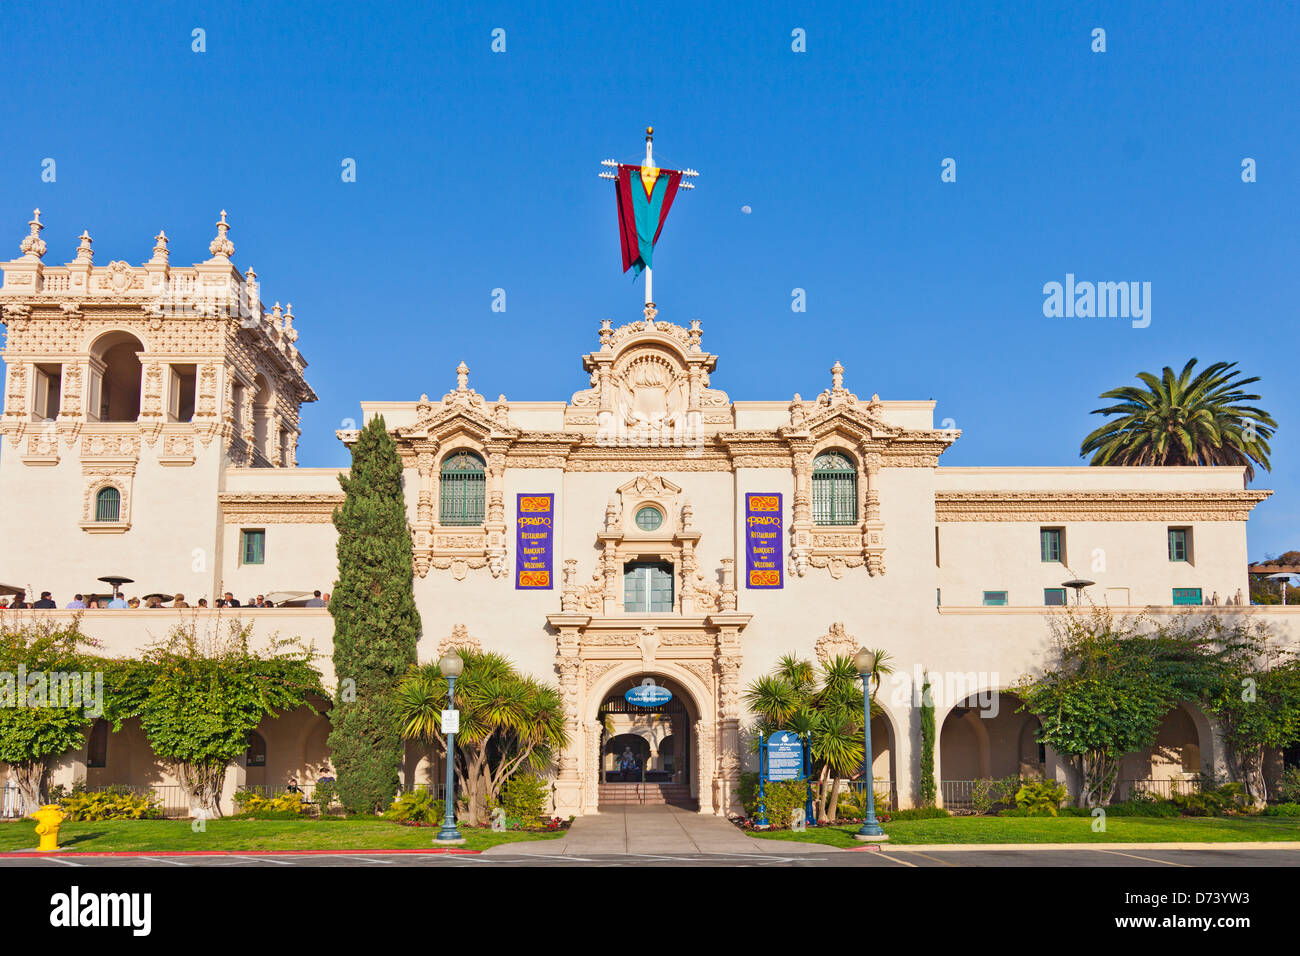 L'extérieur du Restaurant Prado, Maison d'accueil, l'architecture de style renaissance espagnole, Balboa Park, San Diego Banque D'Images